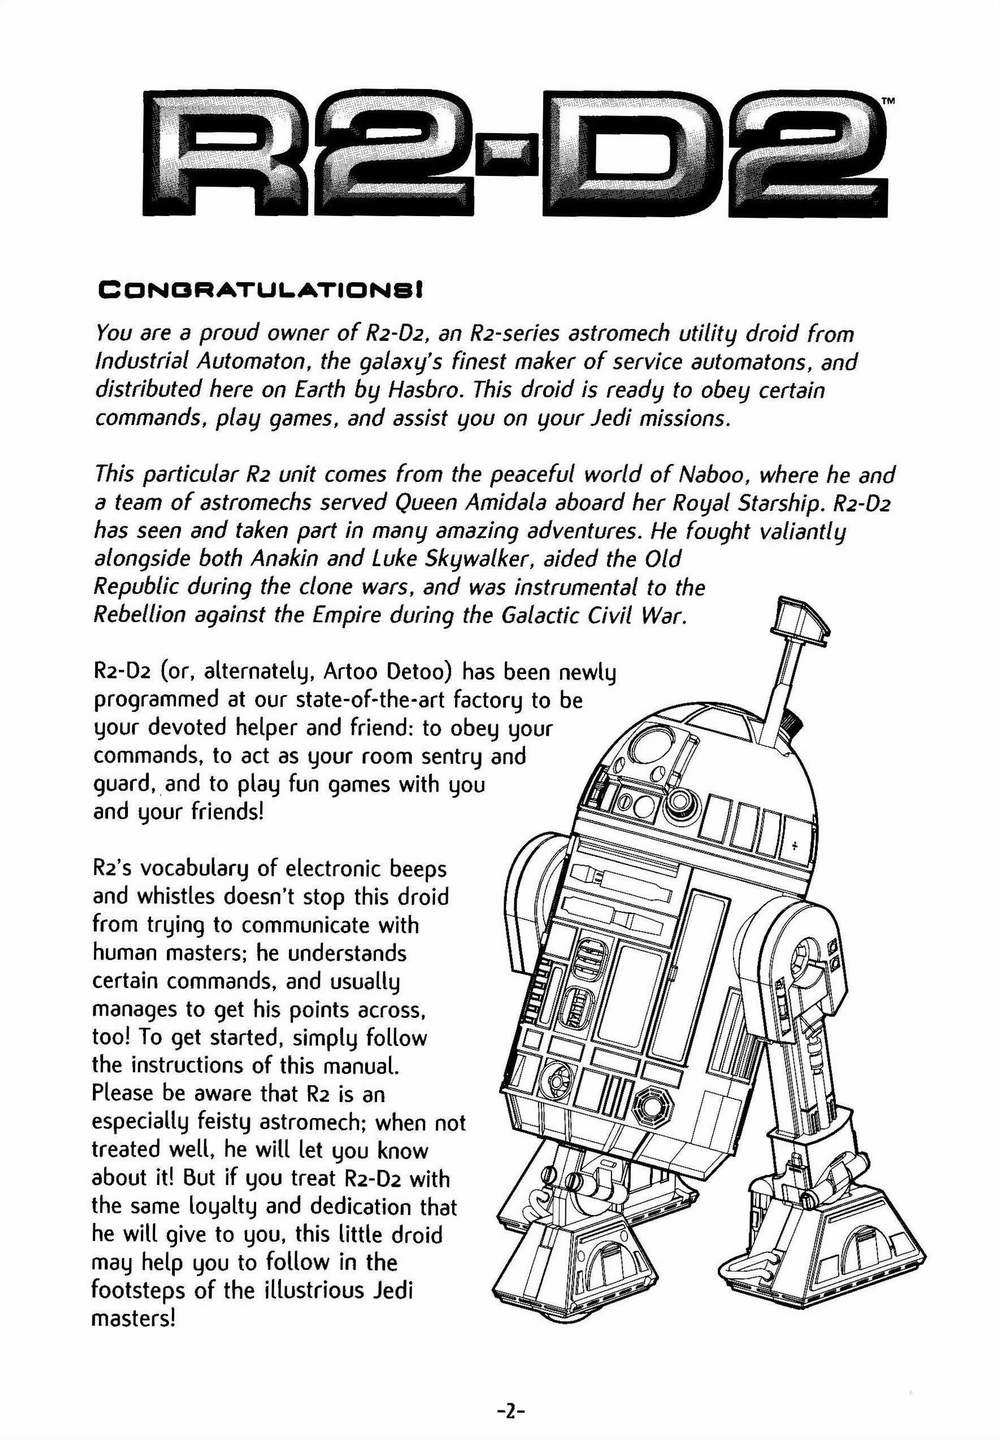 The Robots Web Site - R2D2 Droid Manual